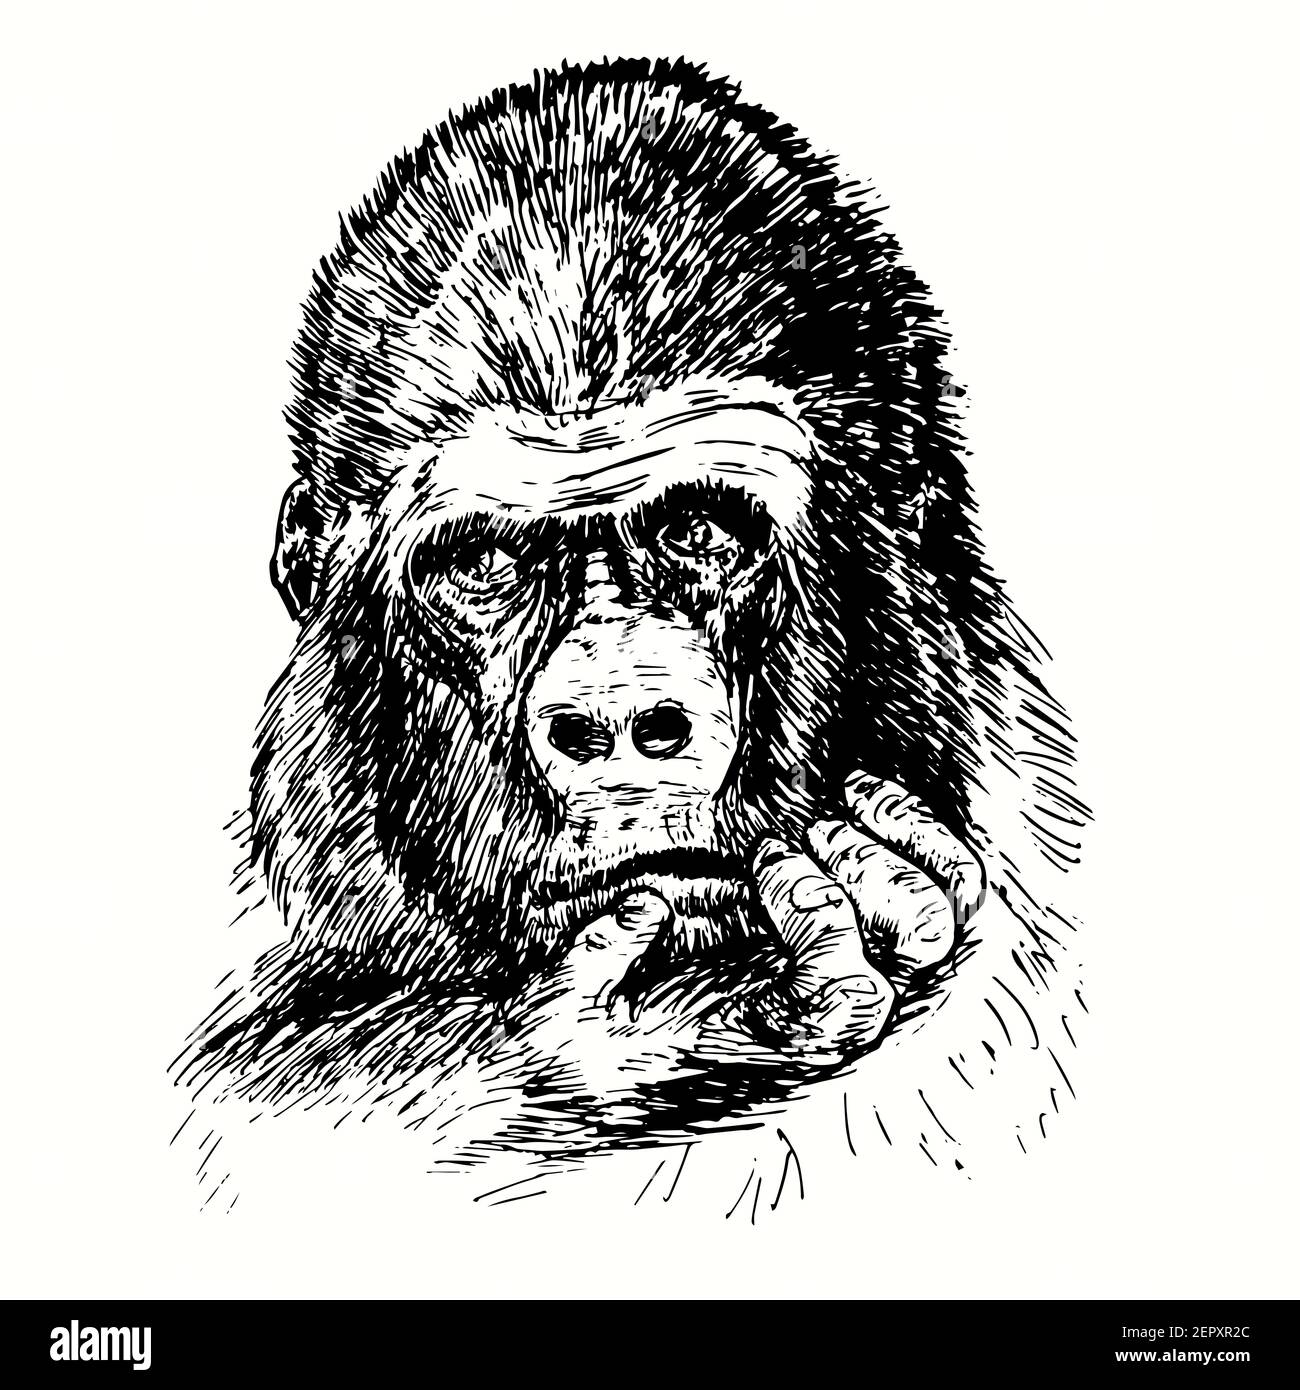 Gorille dessinée à la main avec un visage sérieux tenant la main sur le menton. Dessin noir et blanc Banque D'Images